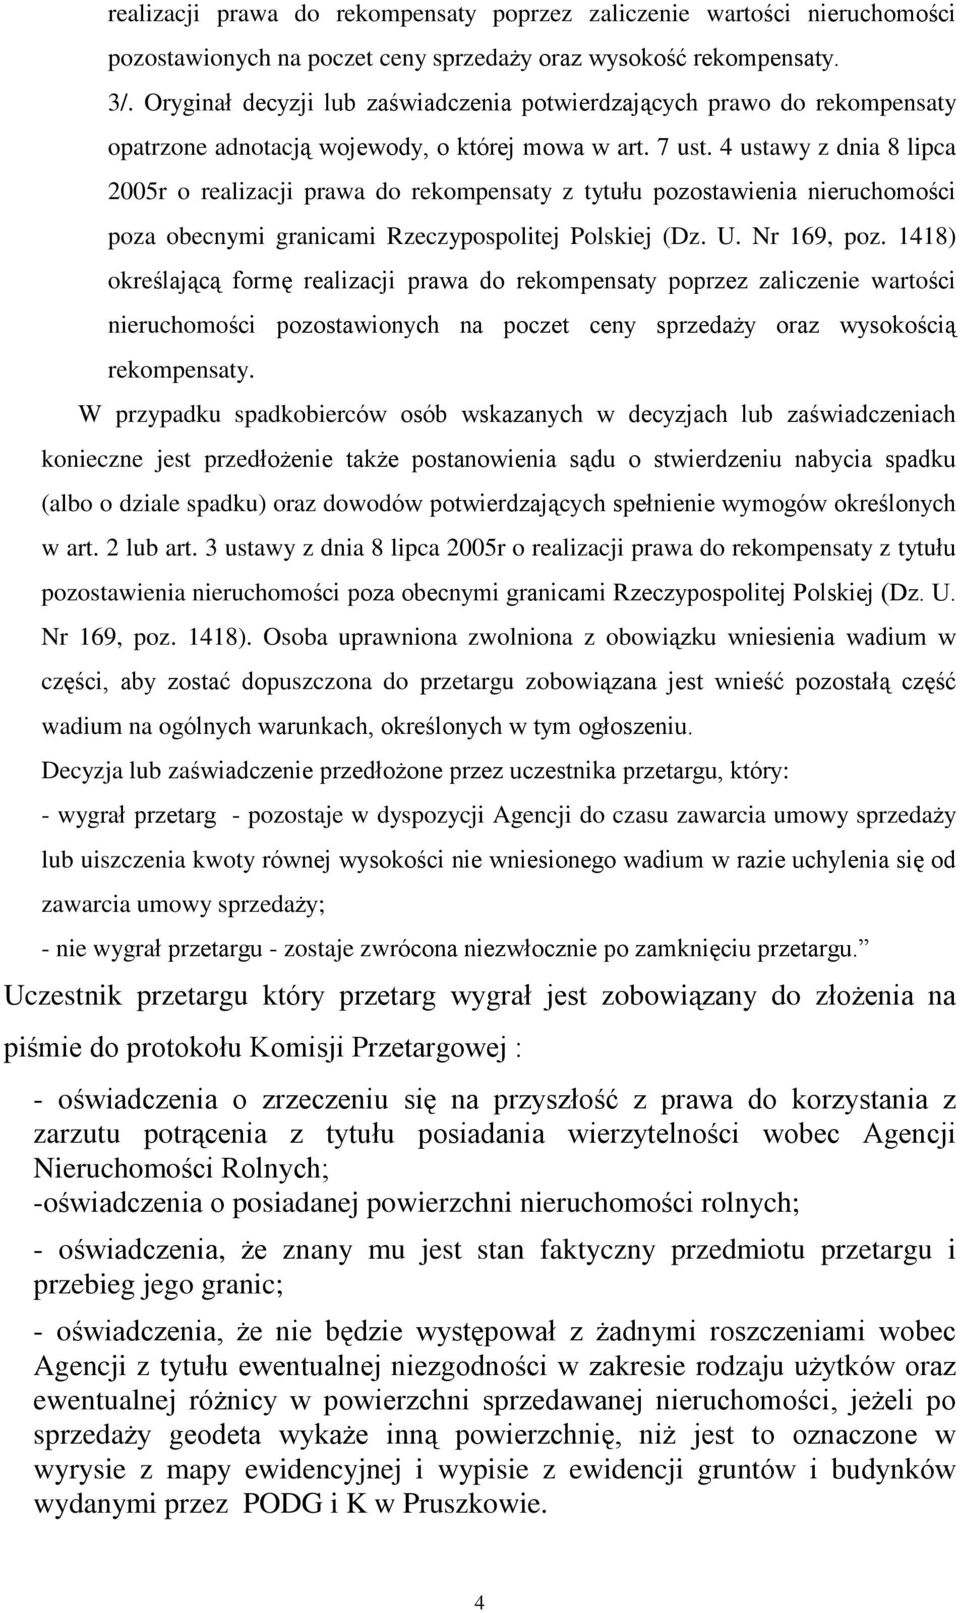 4 ustawy z dnia 8 lipca 2005r o realizacji prawa do rekompensaty z tytuùu pozostawienia nieruchomoœci poza obecnymi granicami Rzeczypospolitej Polskiej (Dz. U. Nr 169, poz.